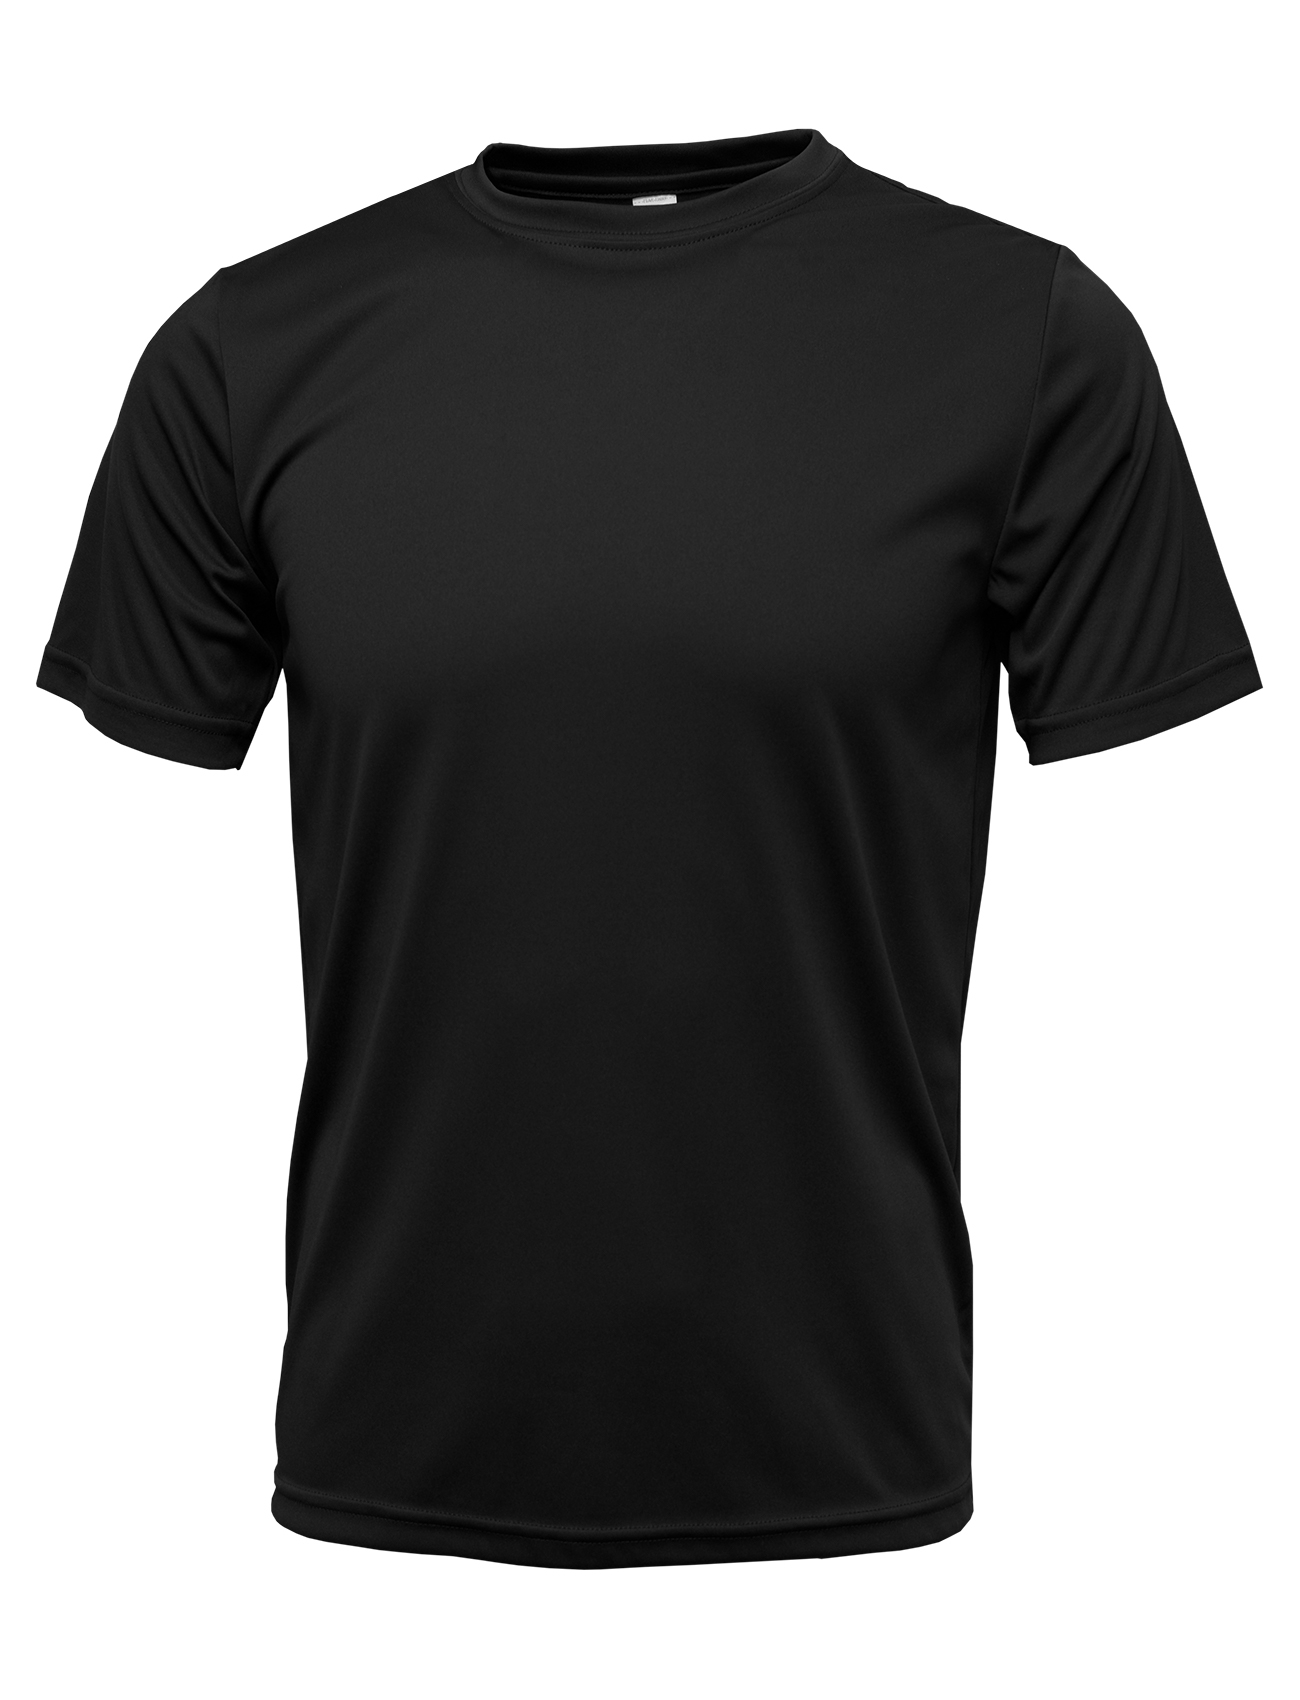 BAW Athletic Wear XT76Y - Youth Xtreme-Tek T-Shirt